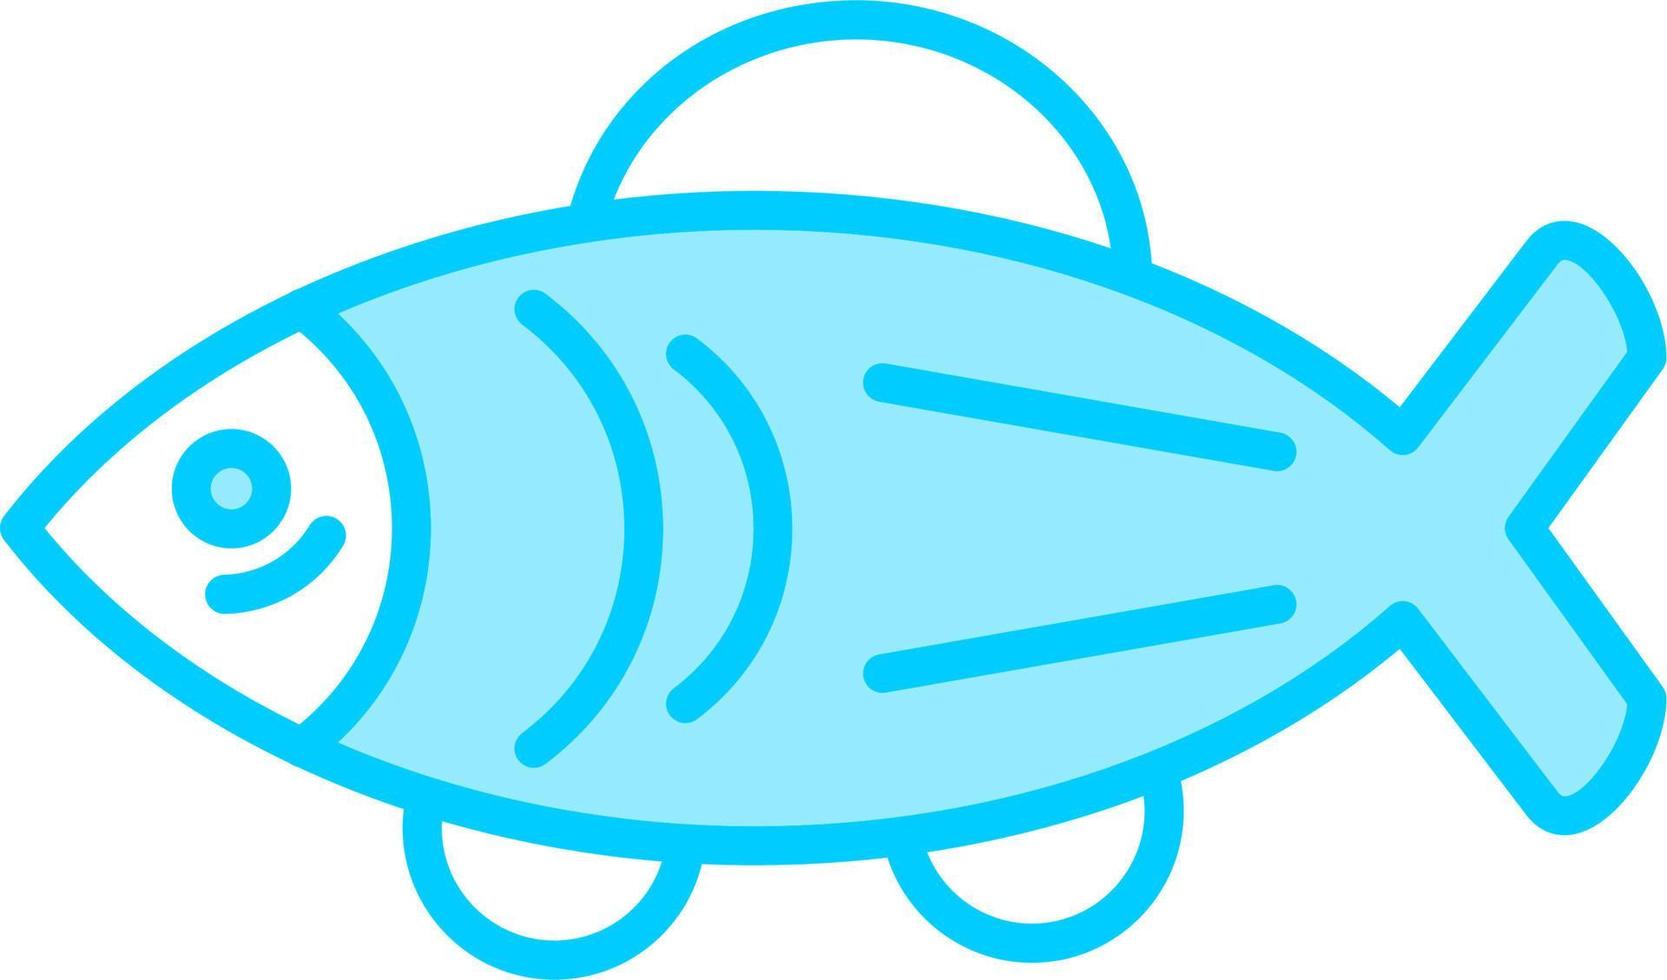 ícone de vetor de salmão